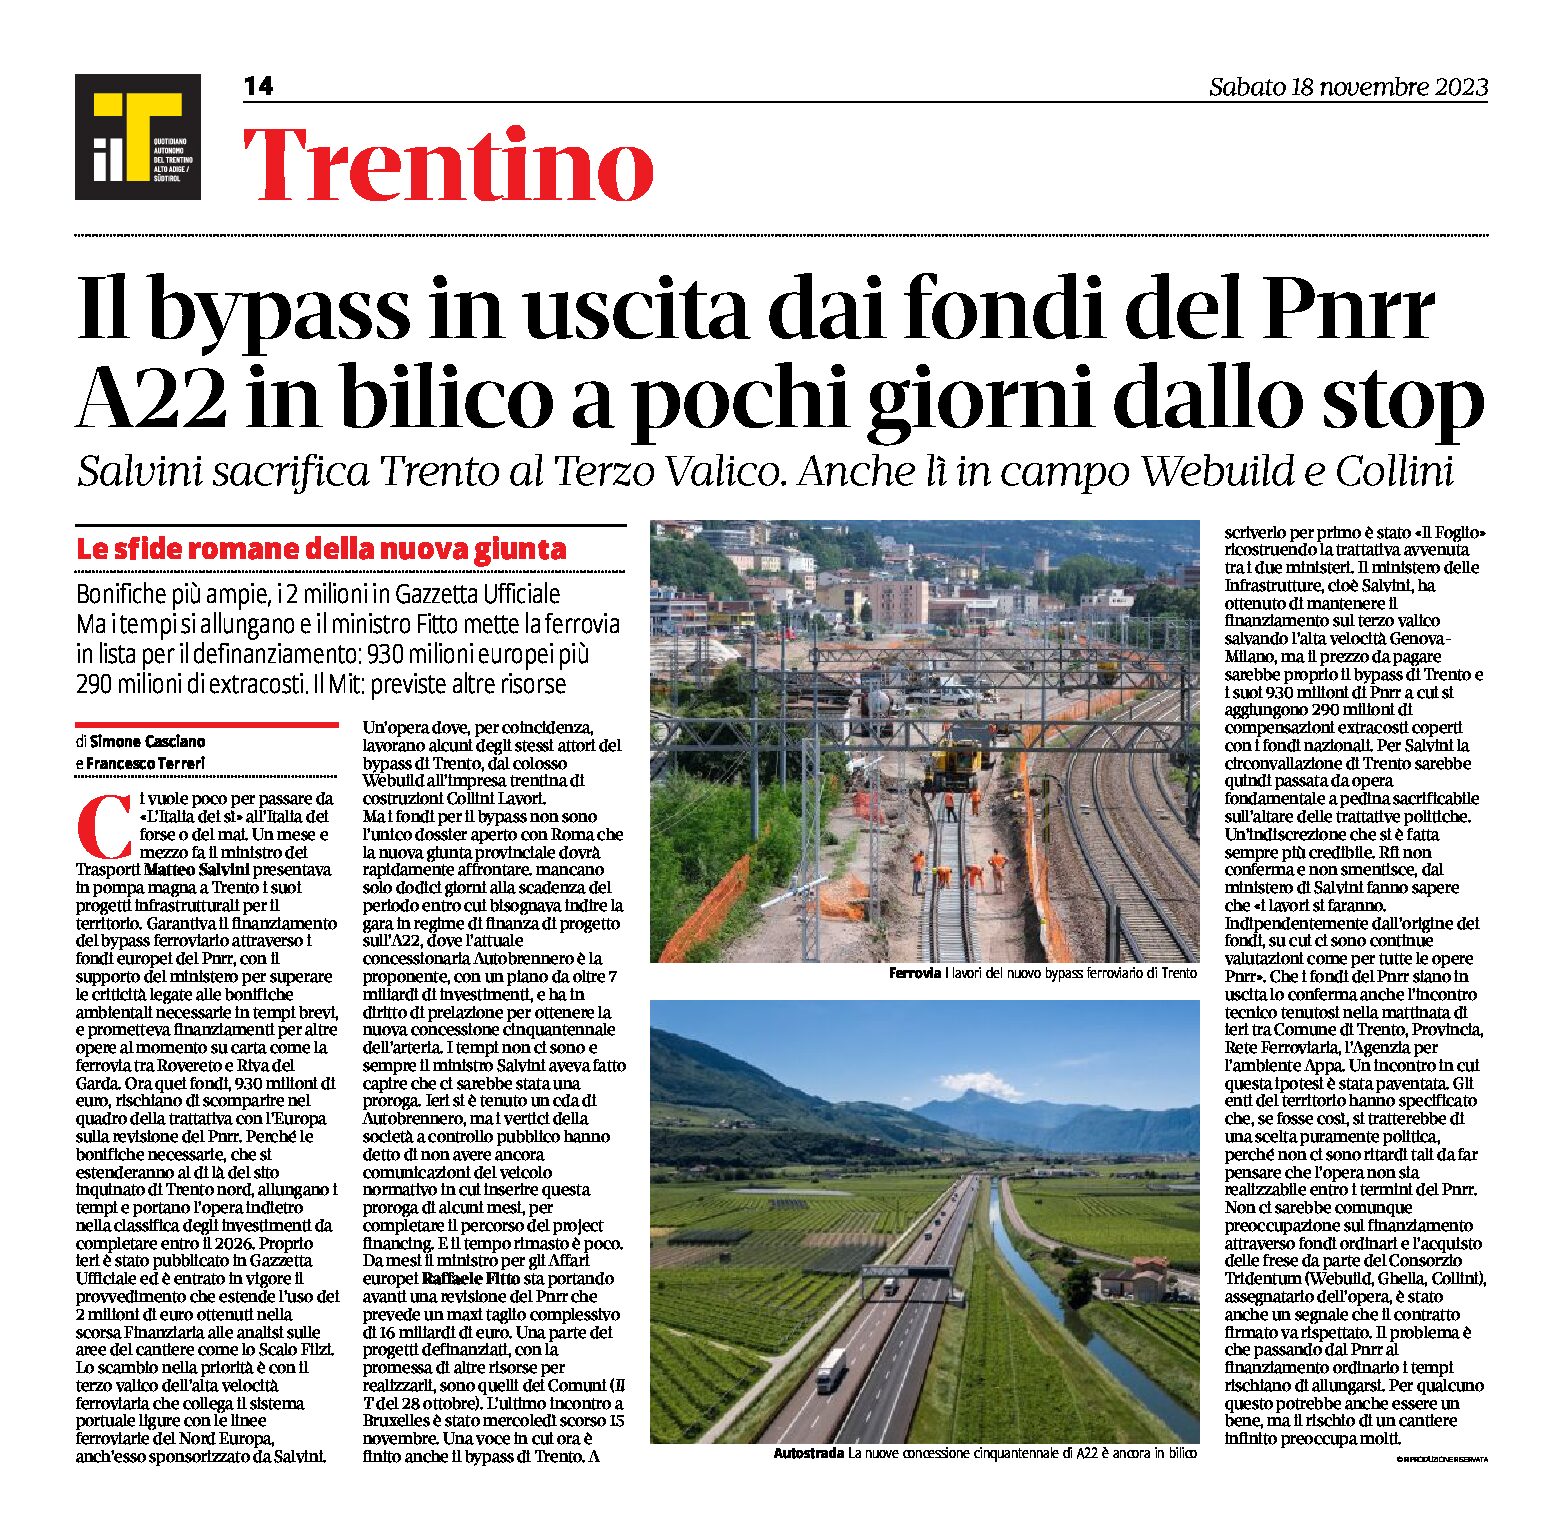 Trento: il bypass in uscita dai fondi del Pnrr. Salvini sacrifica Trento al Terzo Valico